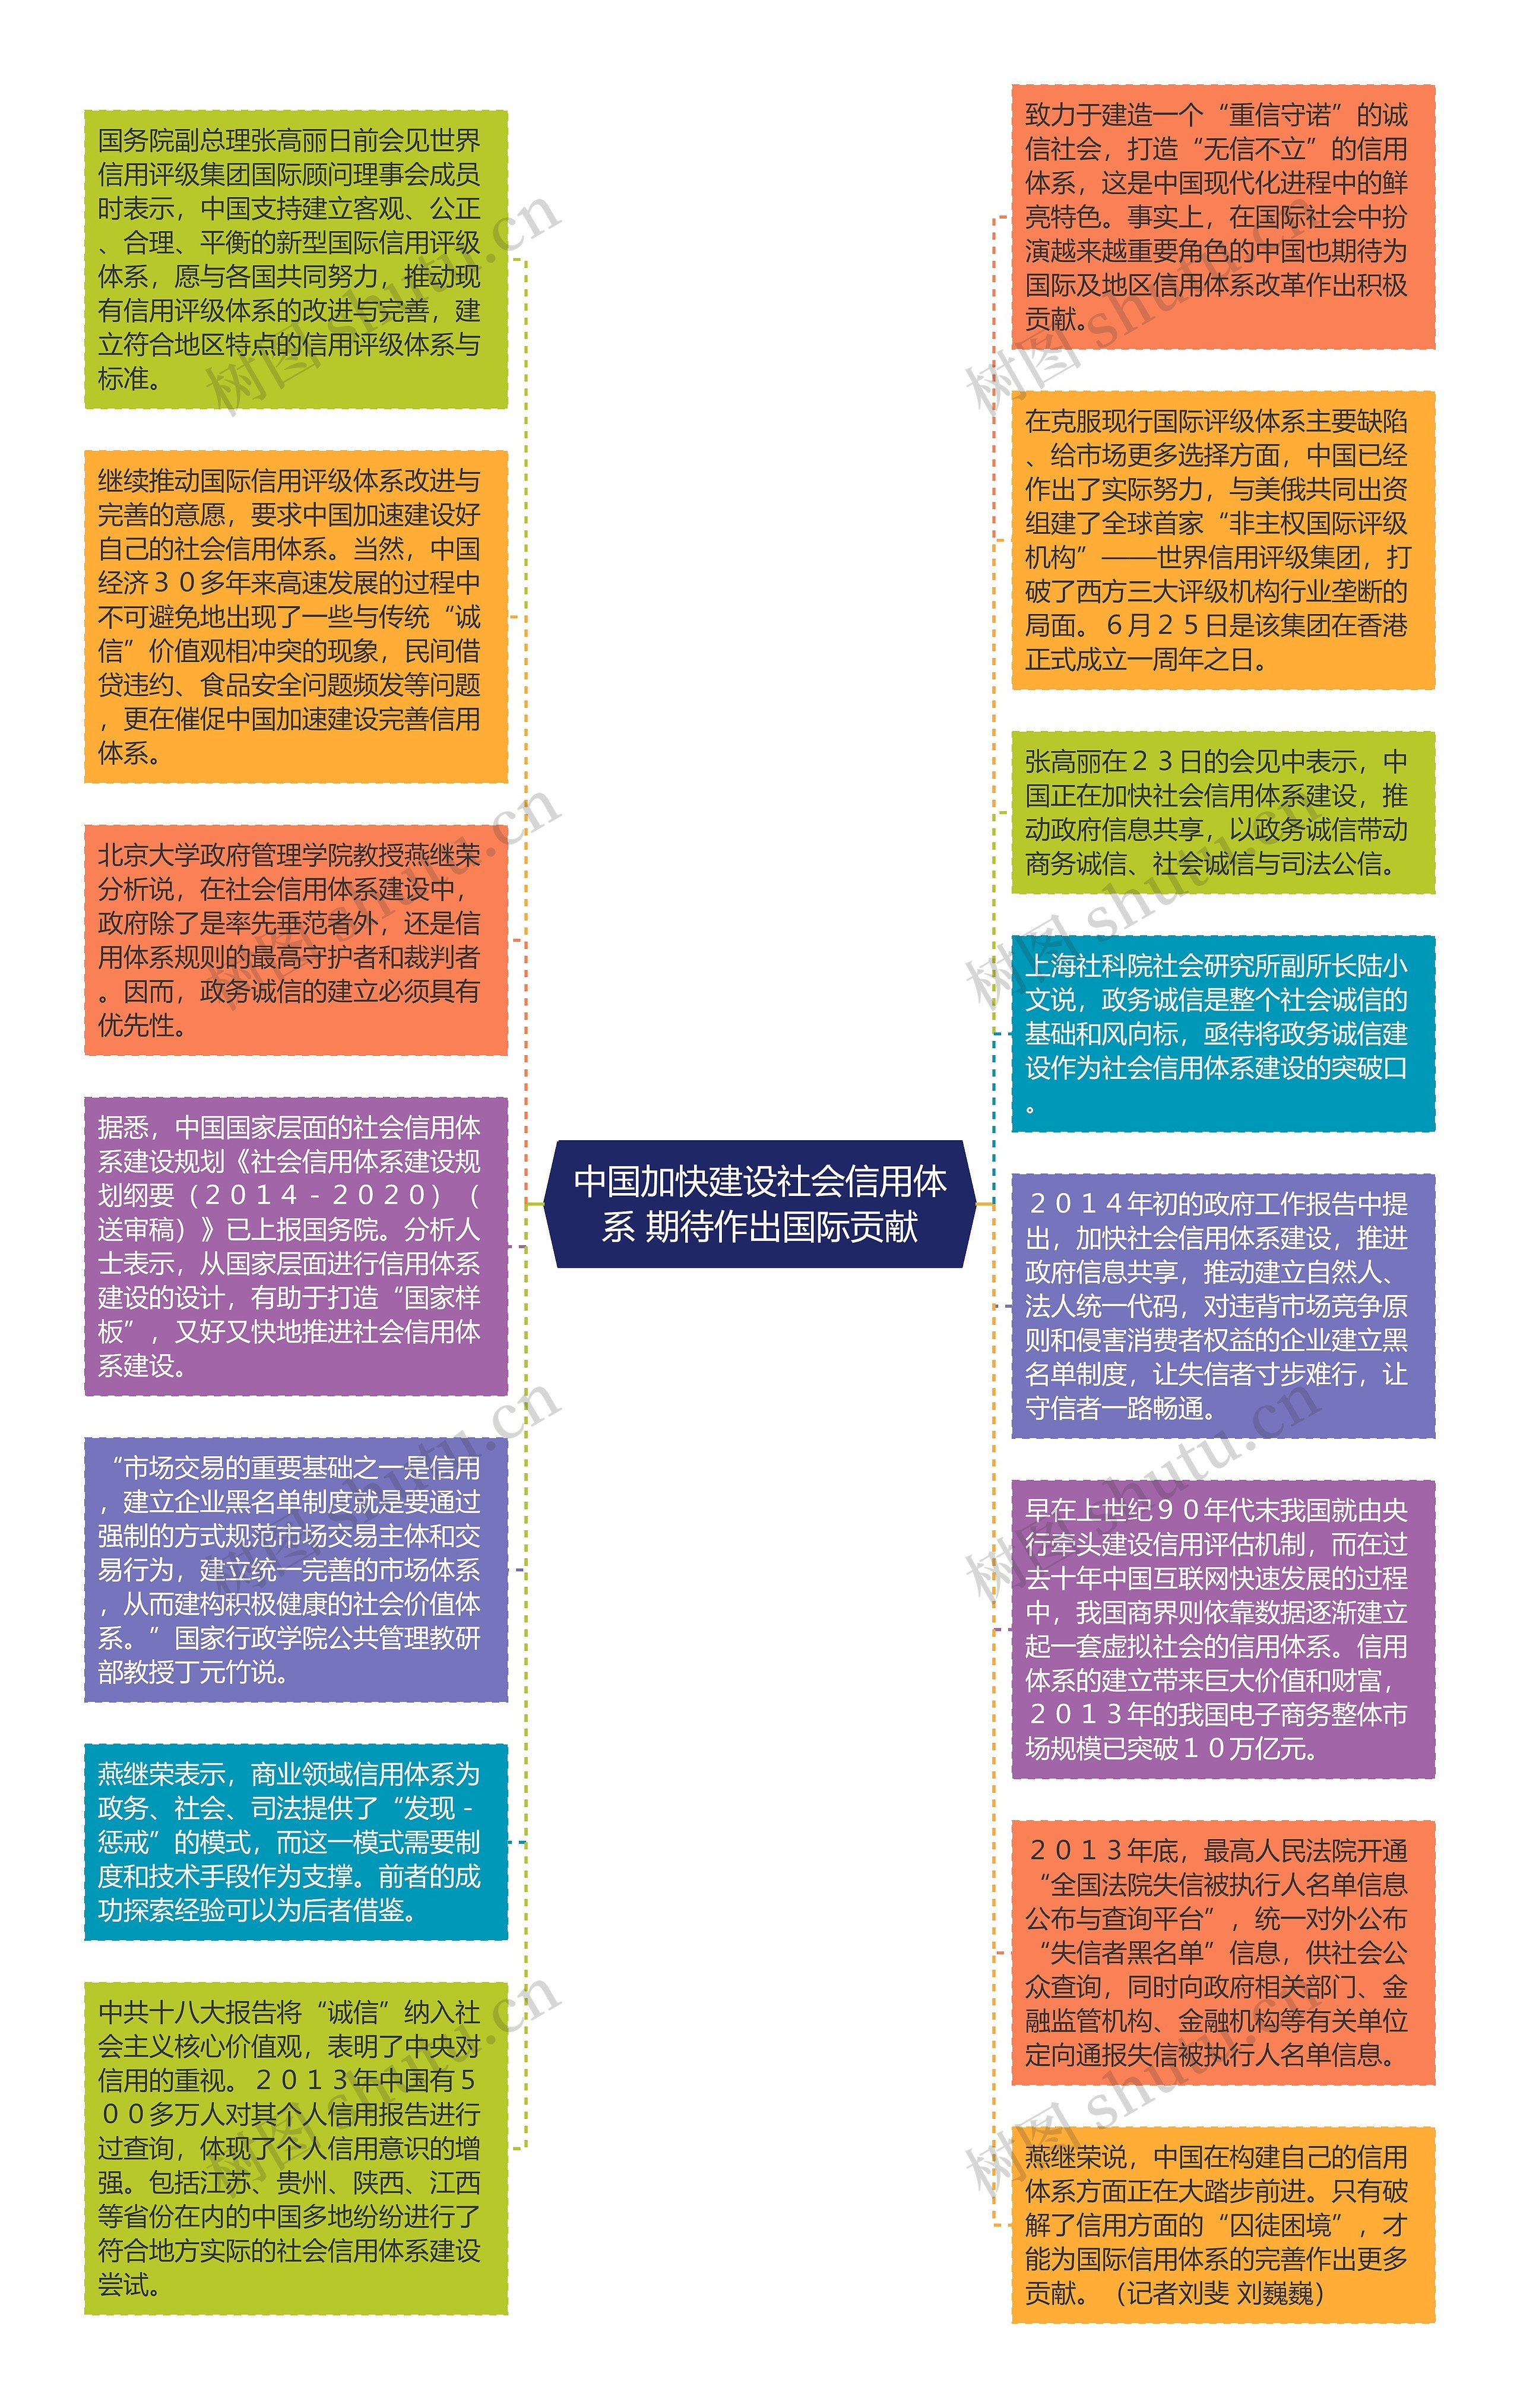 中国加快建设社会信用体系 期待作出国际贡献思维导图